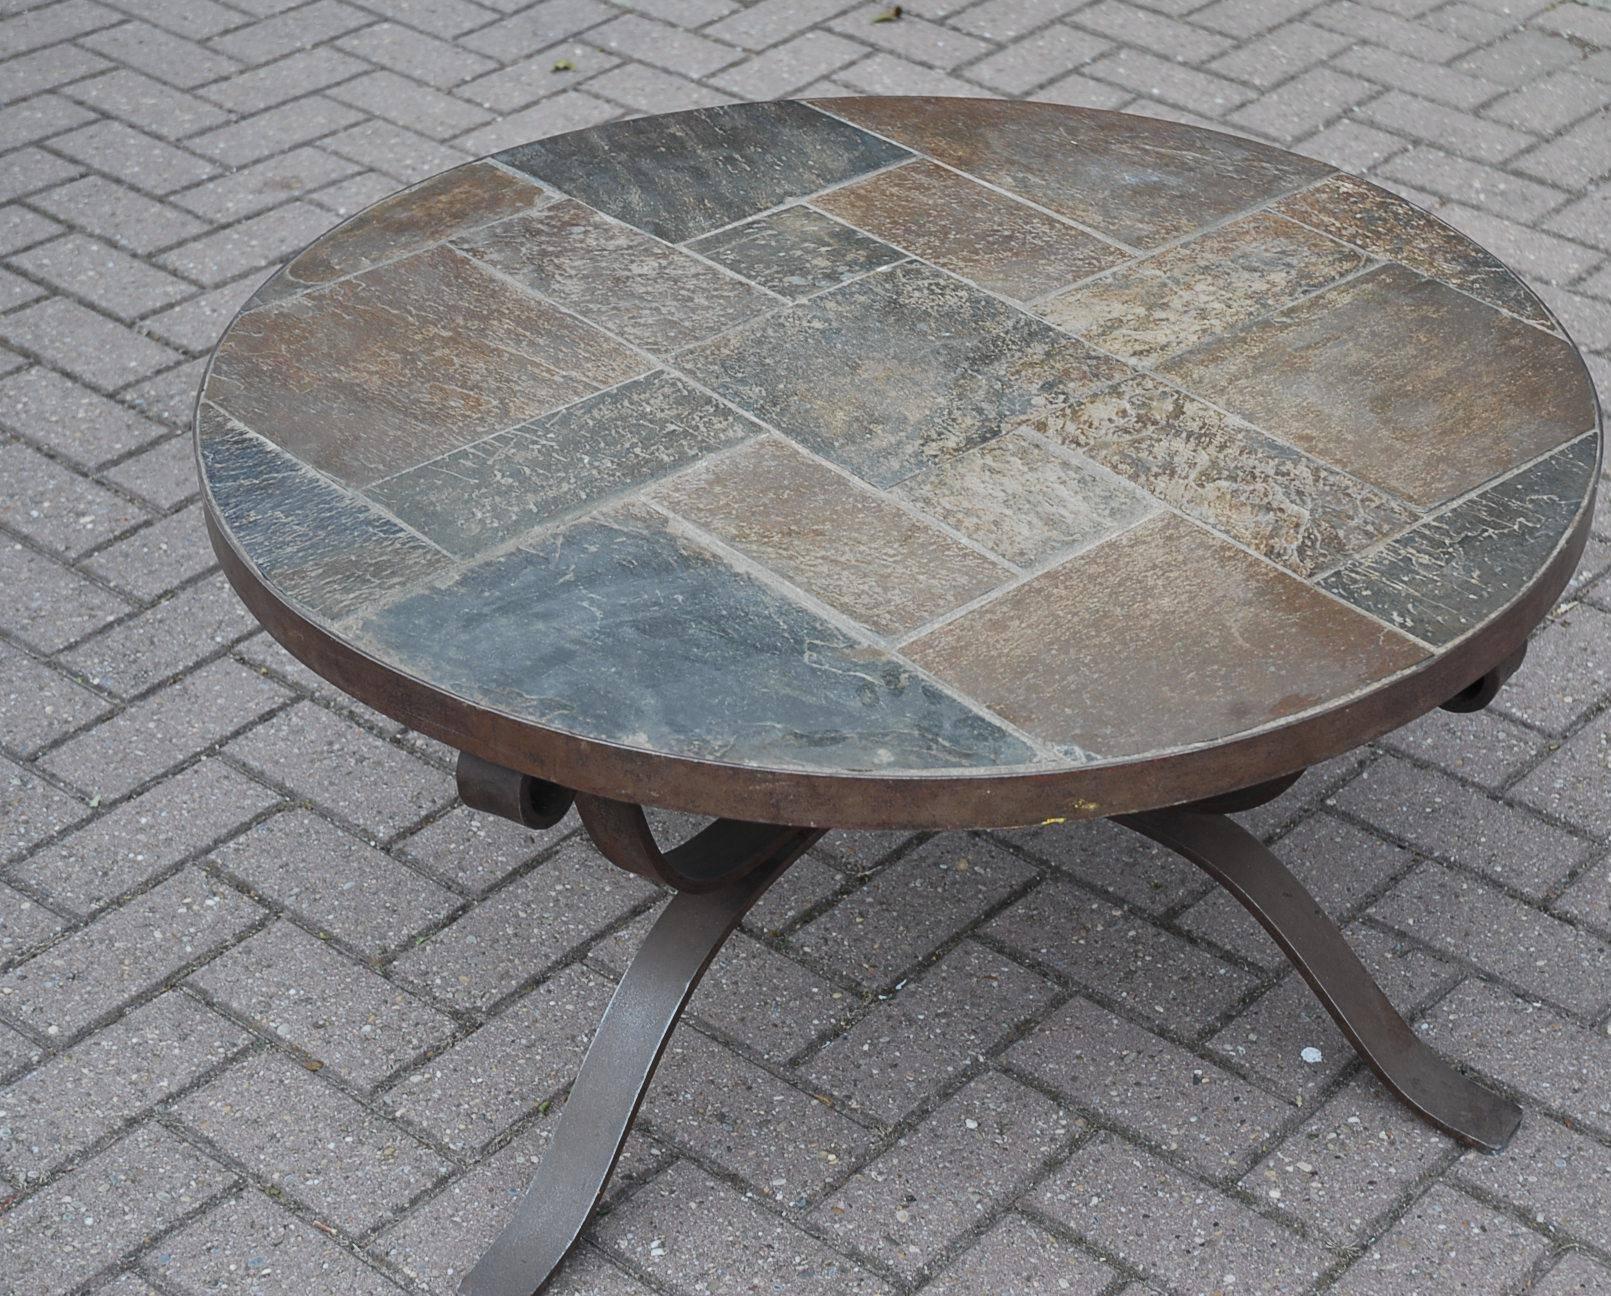 Une table basse robuste et artisanale datant d'environ 1950.

Cette table lourde et robuste est dotée d'une base Art en fer forgé et d'un plateau rond en ardoise. Un artisanat de qualité indéniable qui durera des siècles.

Si vous aimez cette table